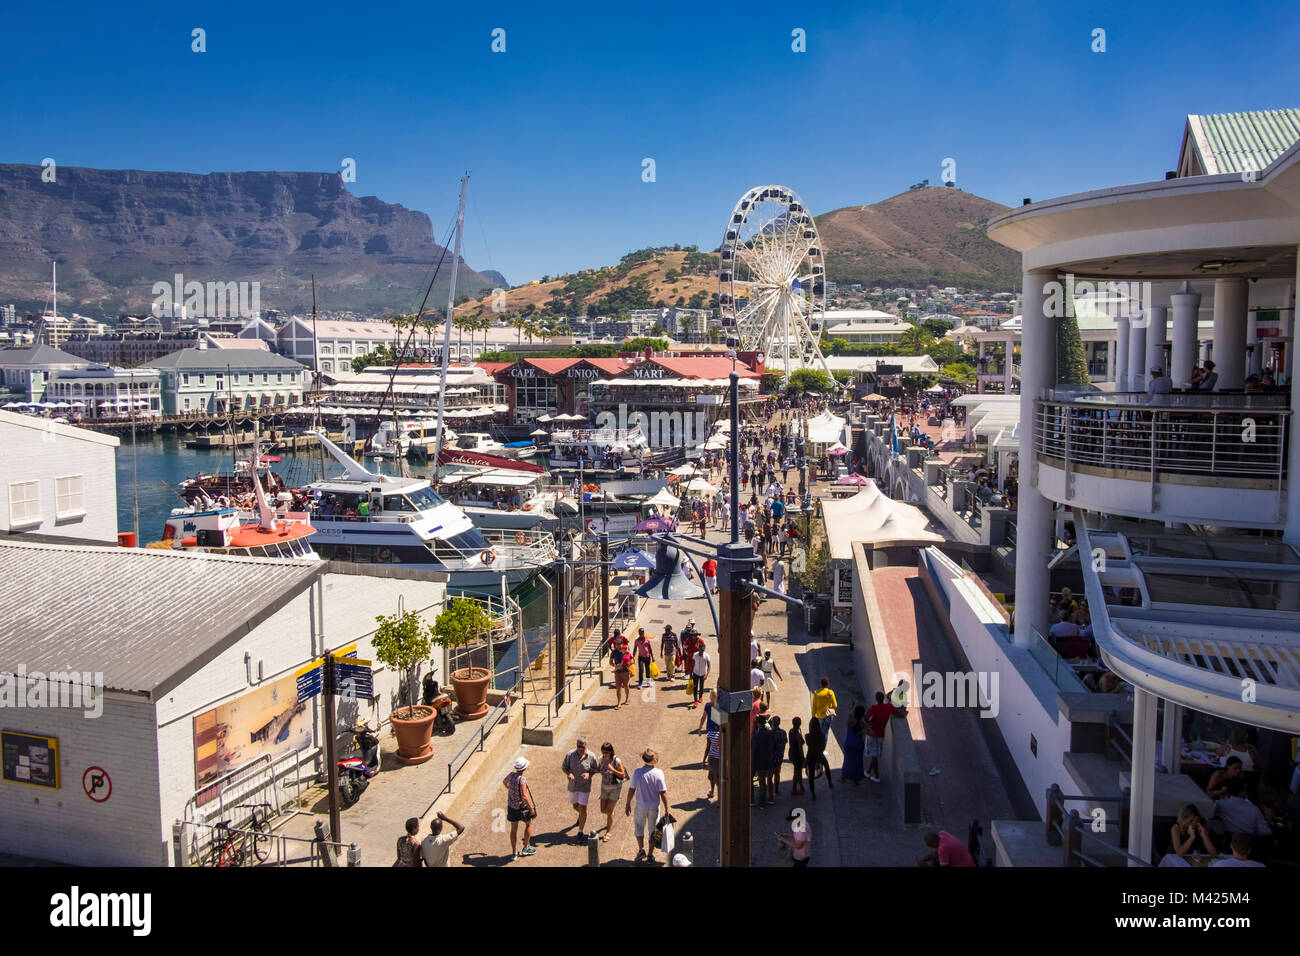 La ville du Cap, les touristes et les acheteurs au V&A Waterfront, Cape Town, Afrique du Sud, montrant le cap, l'Union Mart le cap et la montagne de la table de roue Banque D'Images